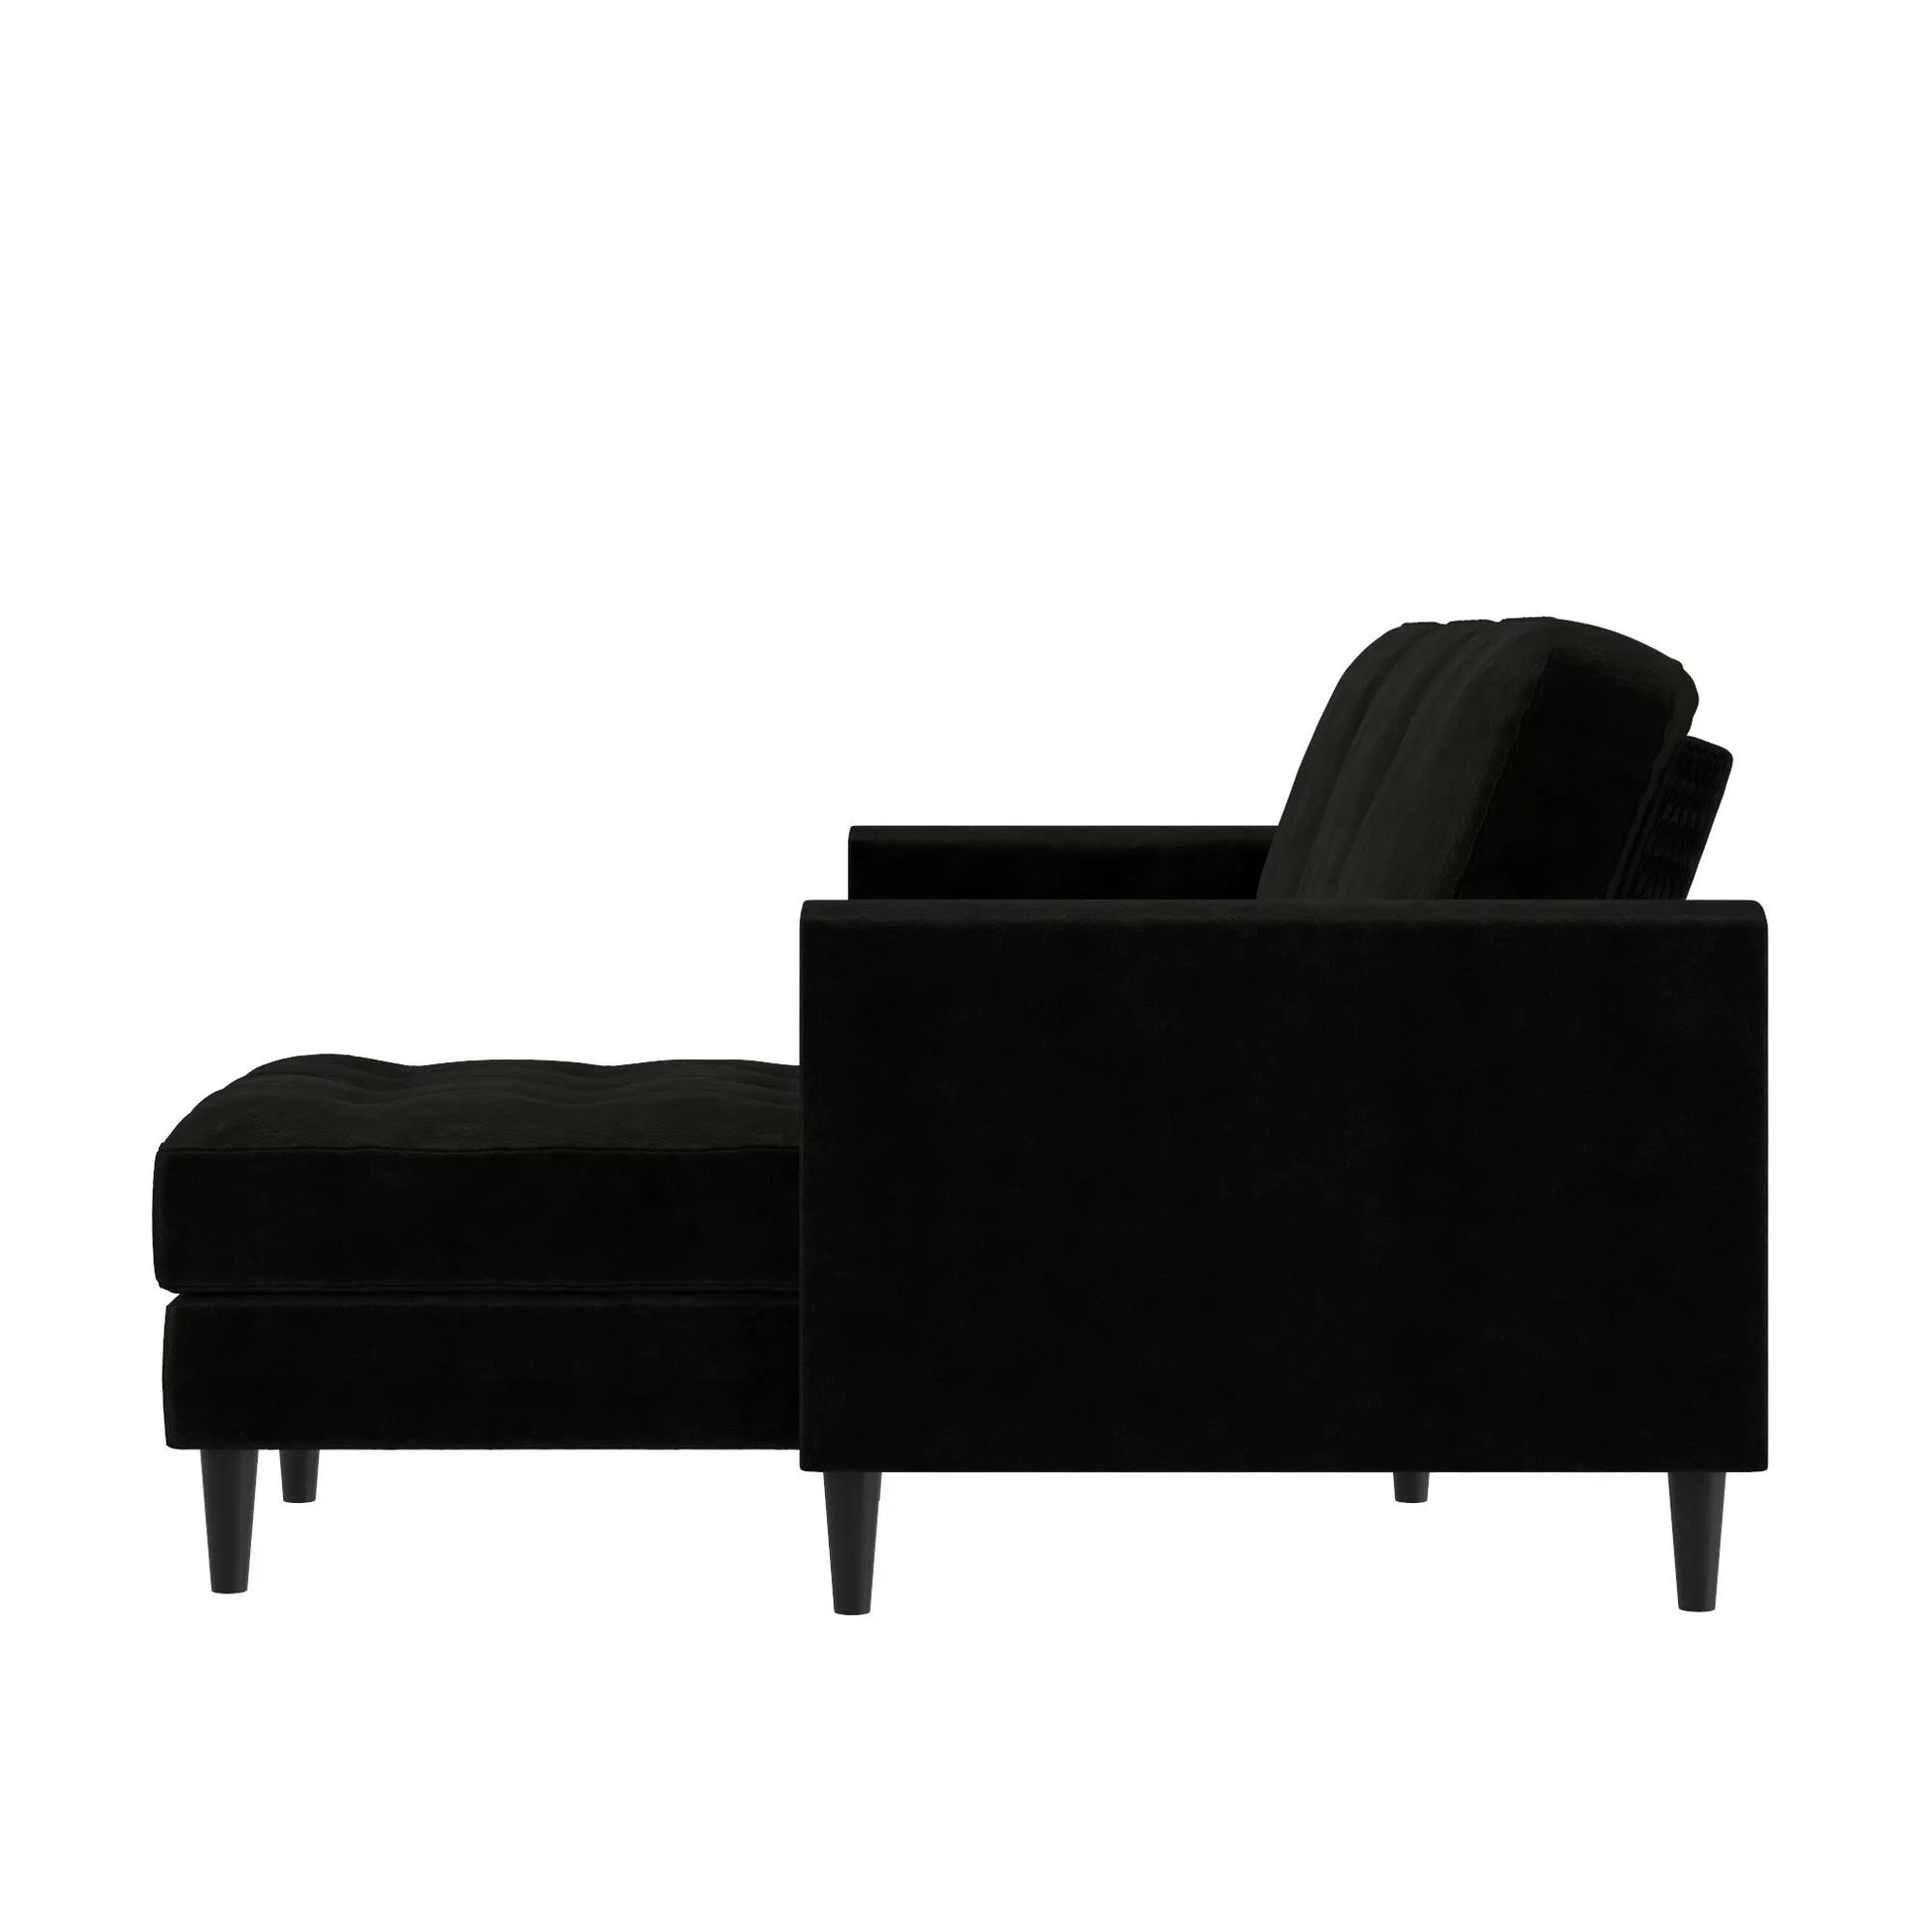 Cosmoliving Strummer Reversible Sectional Sofa Couch, Black Velvet